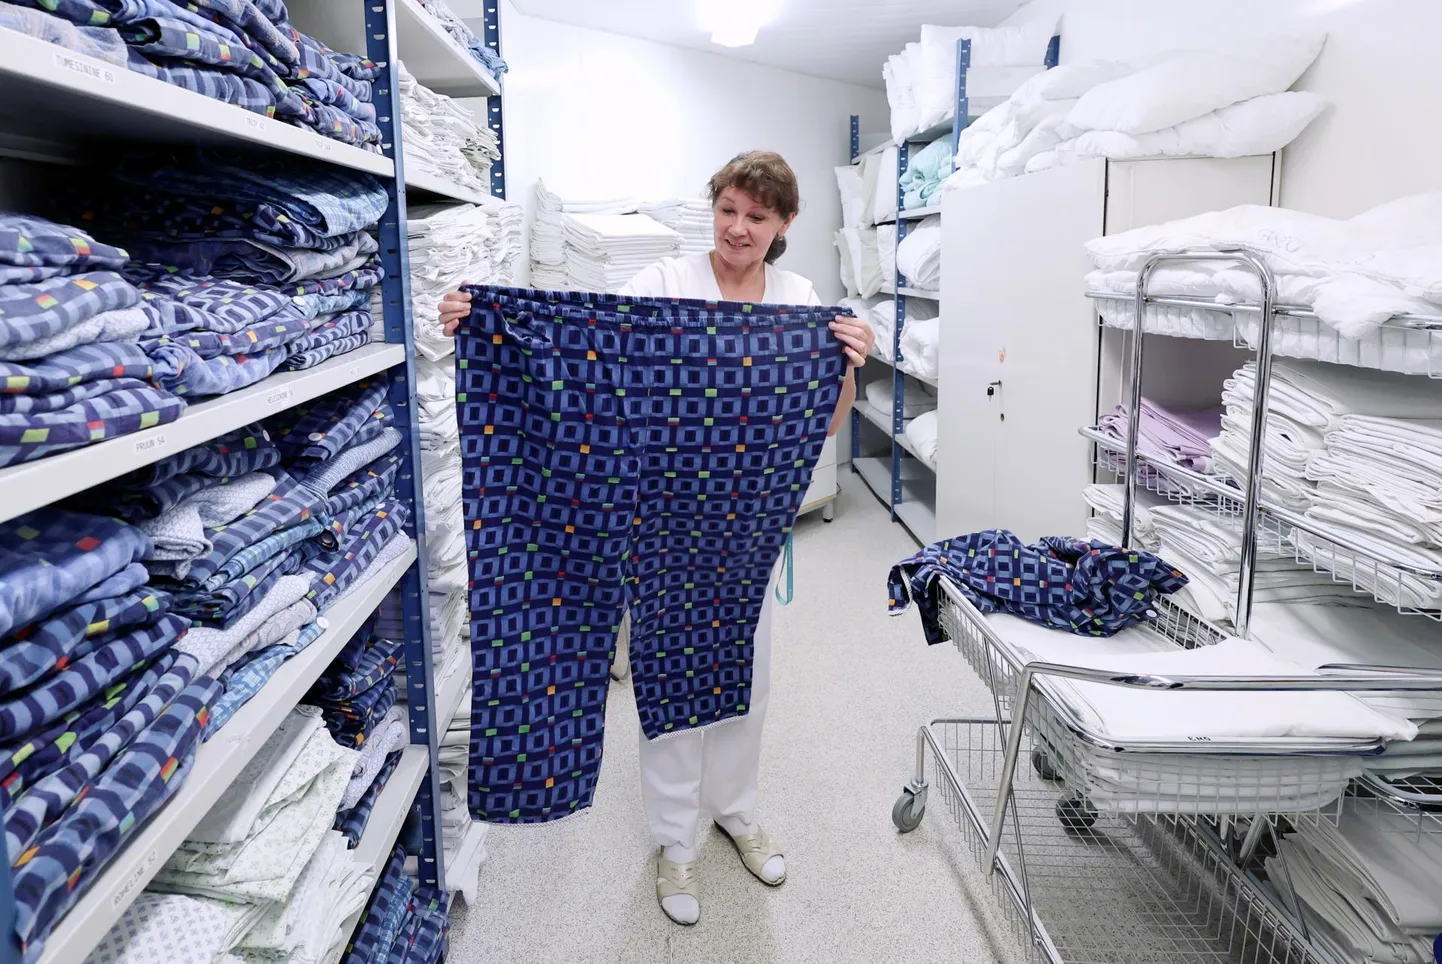 Иви Альбрехт, заведующая прачечной больницы Тартуского университета, показала пижамные брюки 68-го размера. Размер 70 также имеется в наличии.